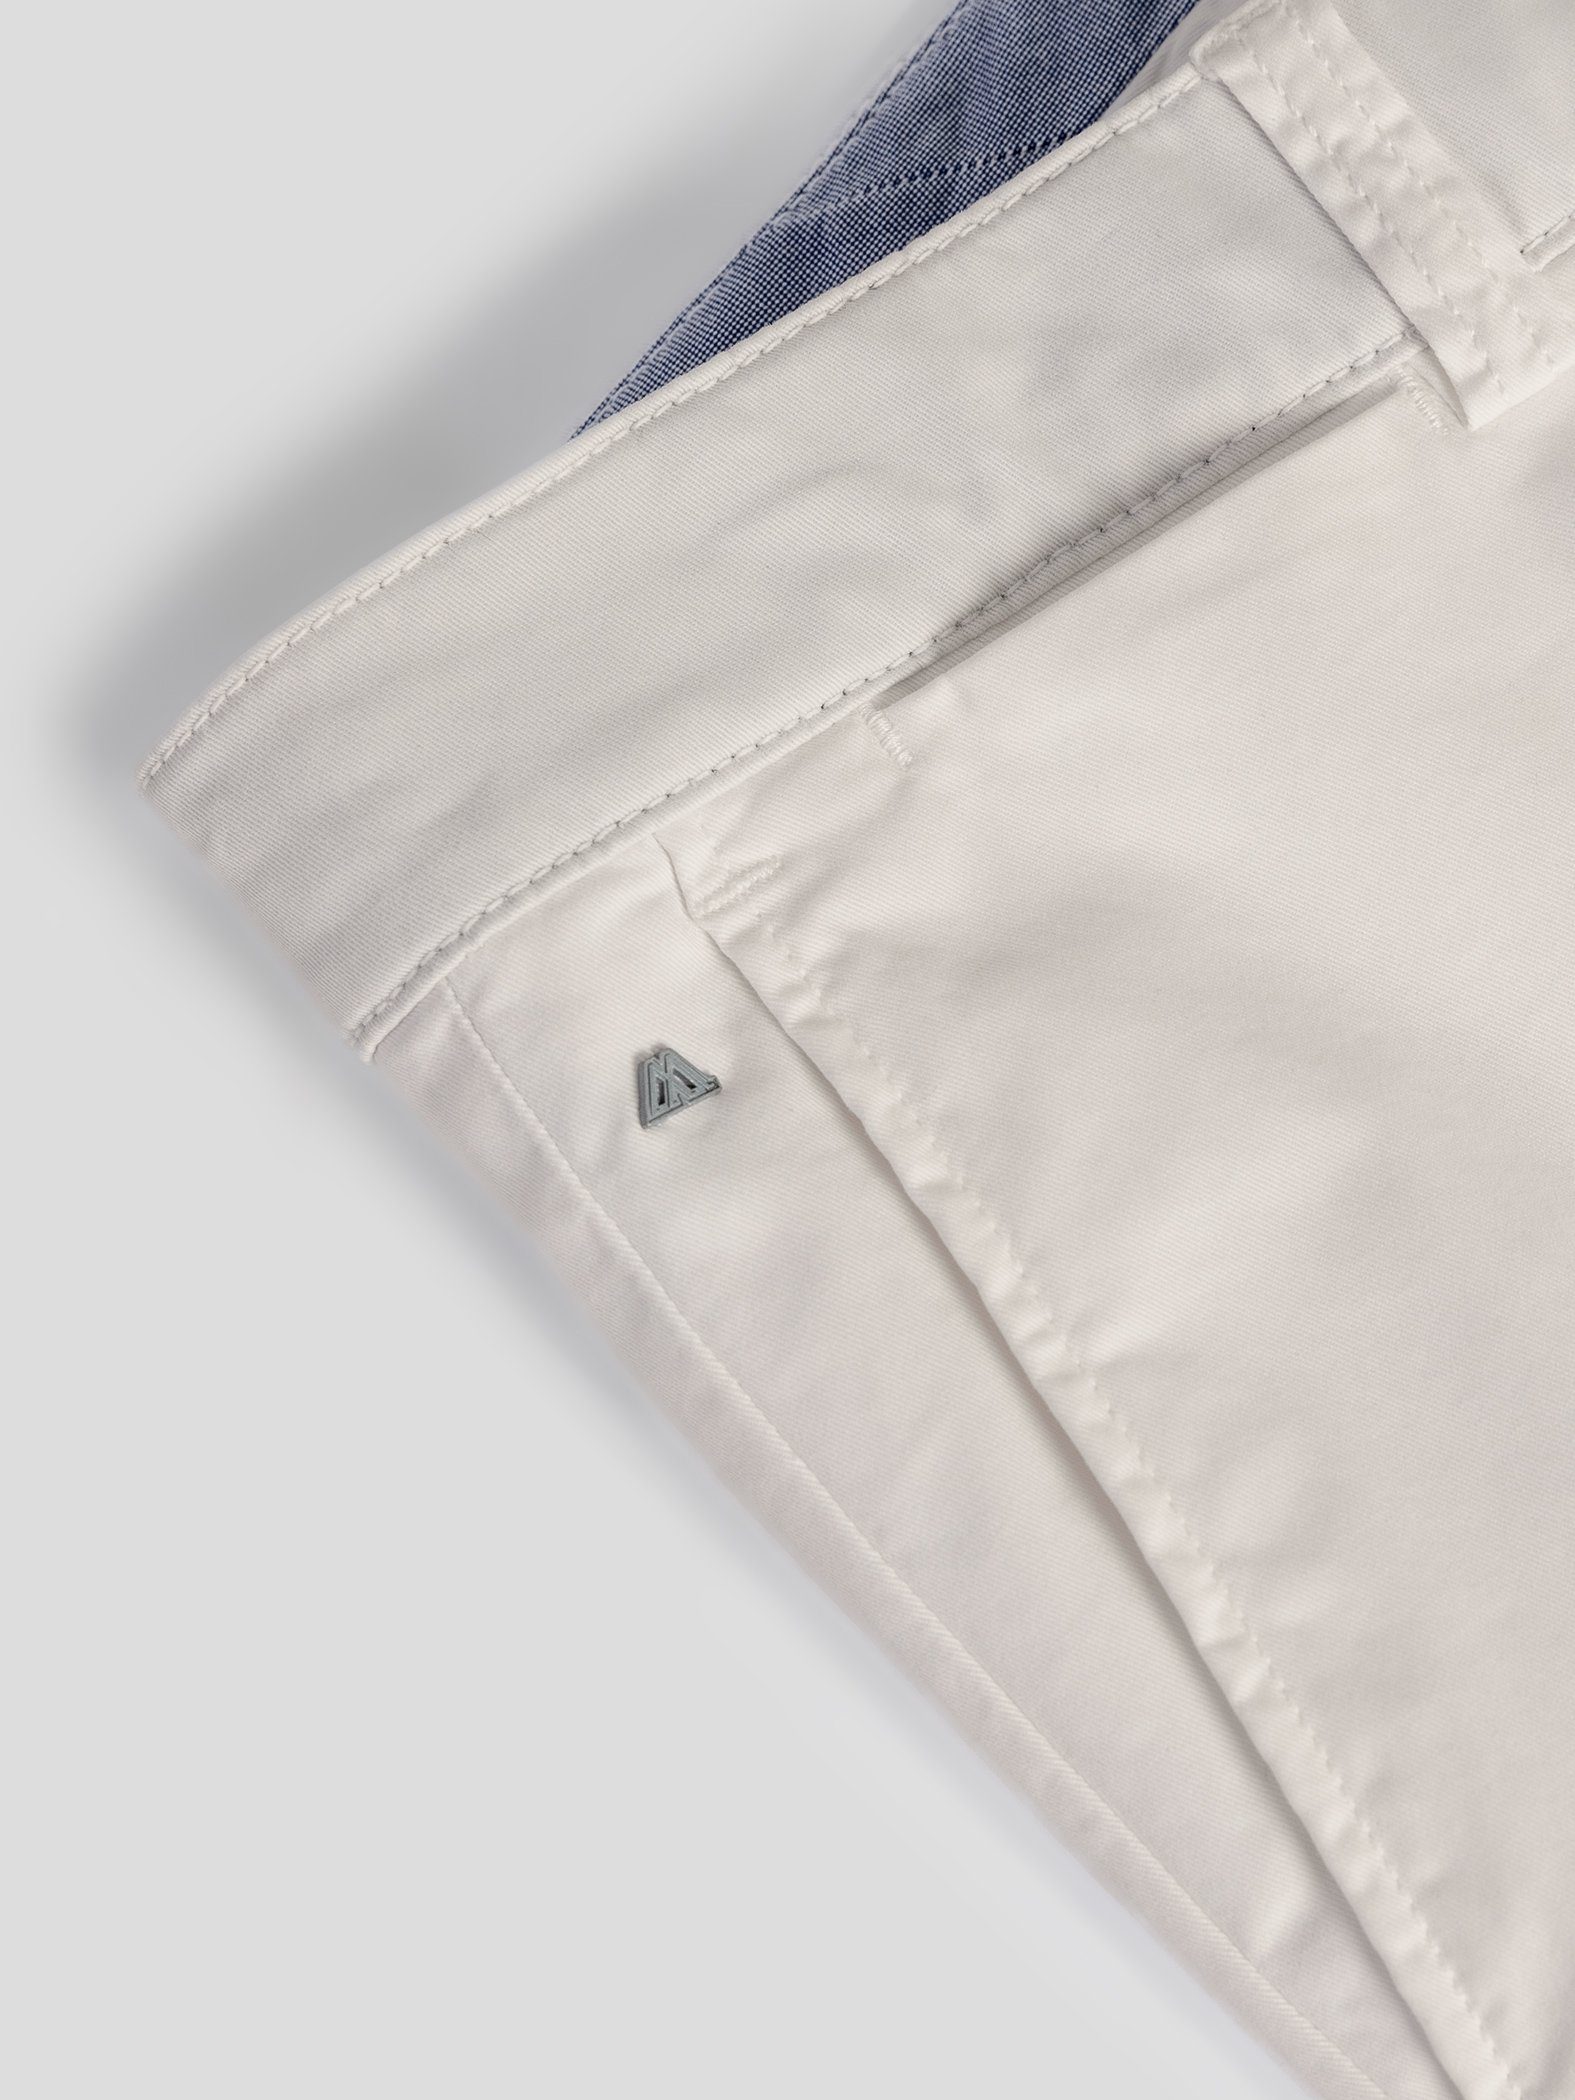 TwoMates Shorts Shorts mit elastischem Farbauswahl, GOTS-zertifiziert Bund, hellbeige